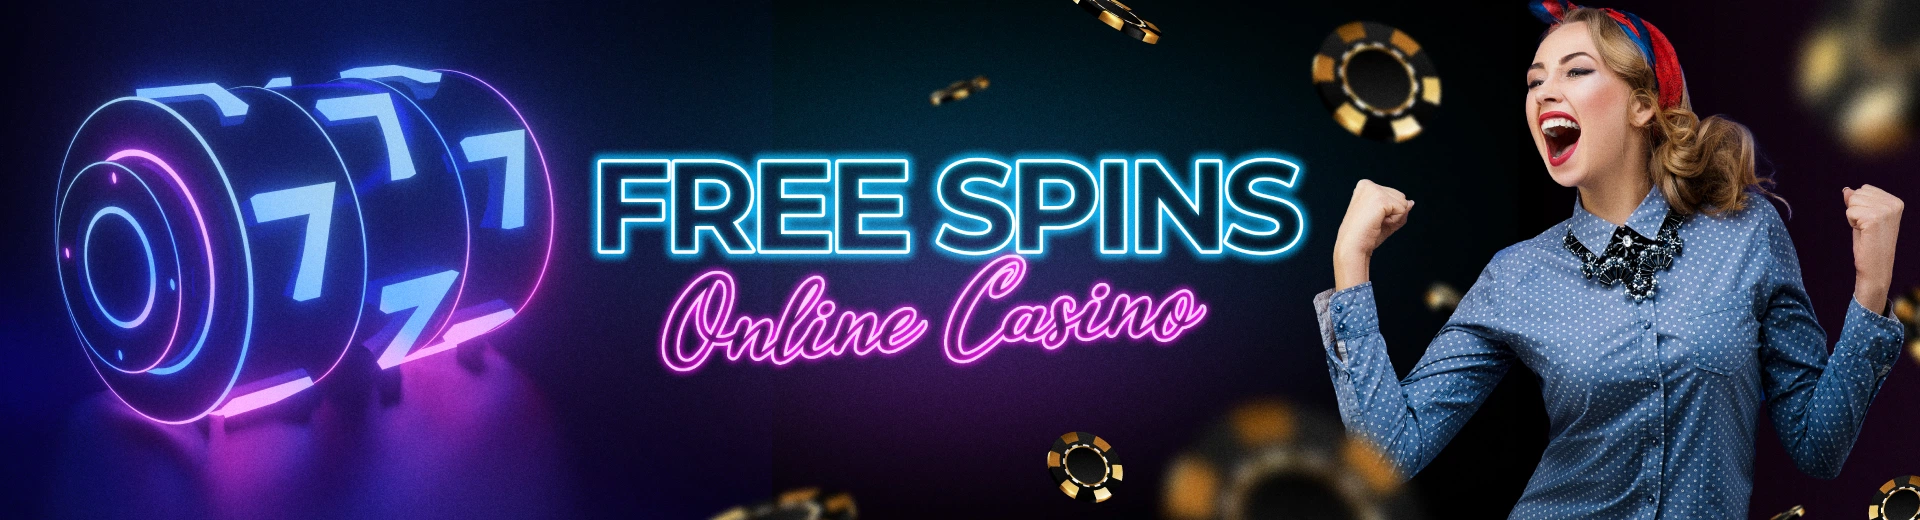 Free Spins Online Casino in the Philippines - OKBET online casino